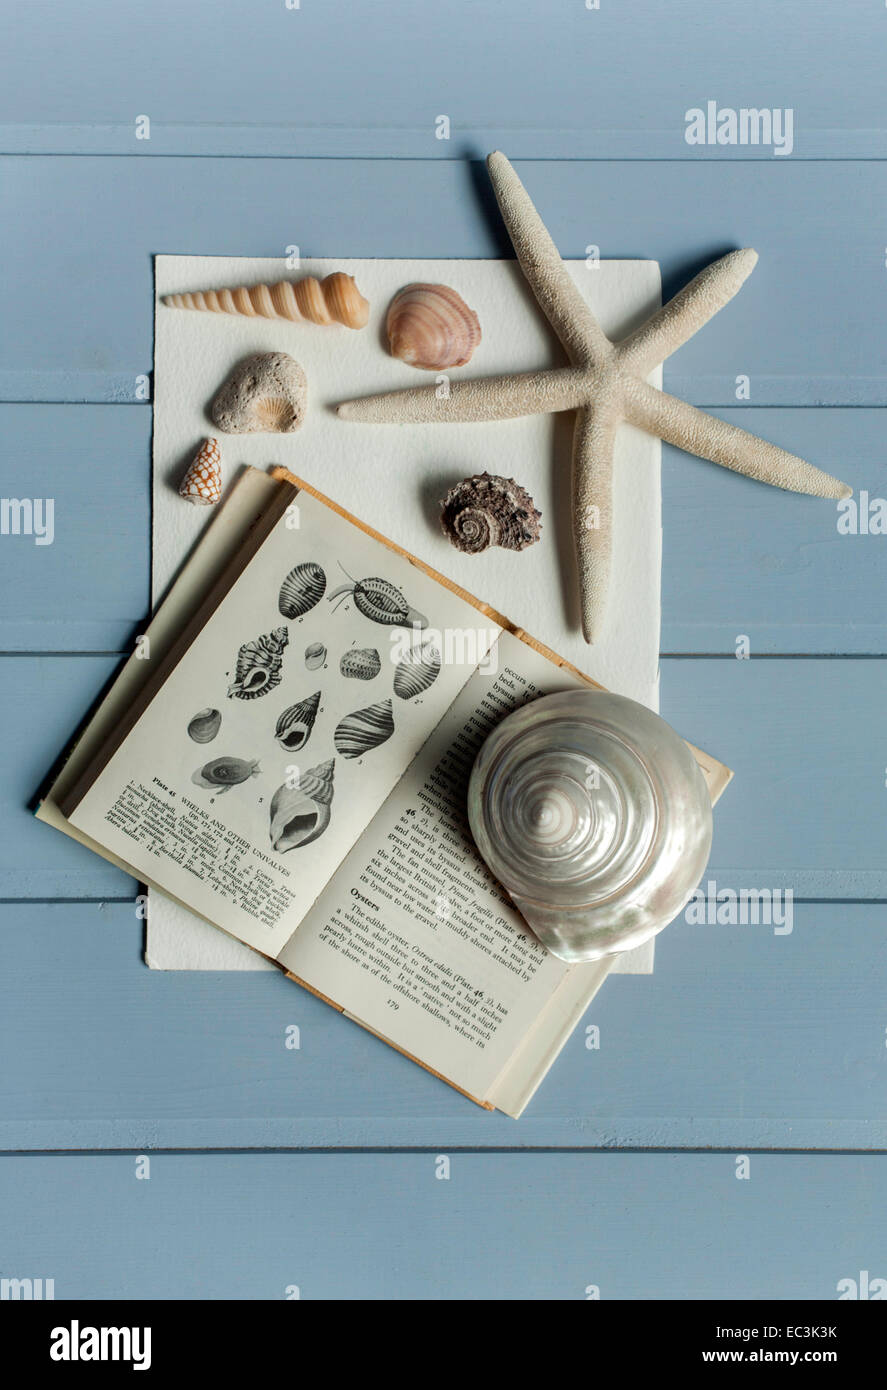 Colección de caracoles en observador libro de referencia Foto de stock